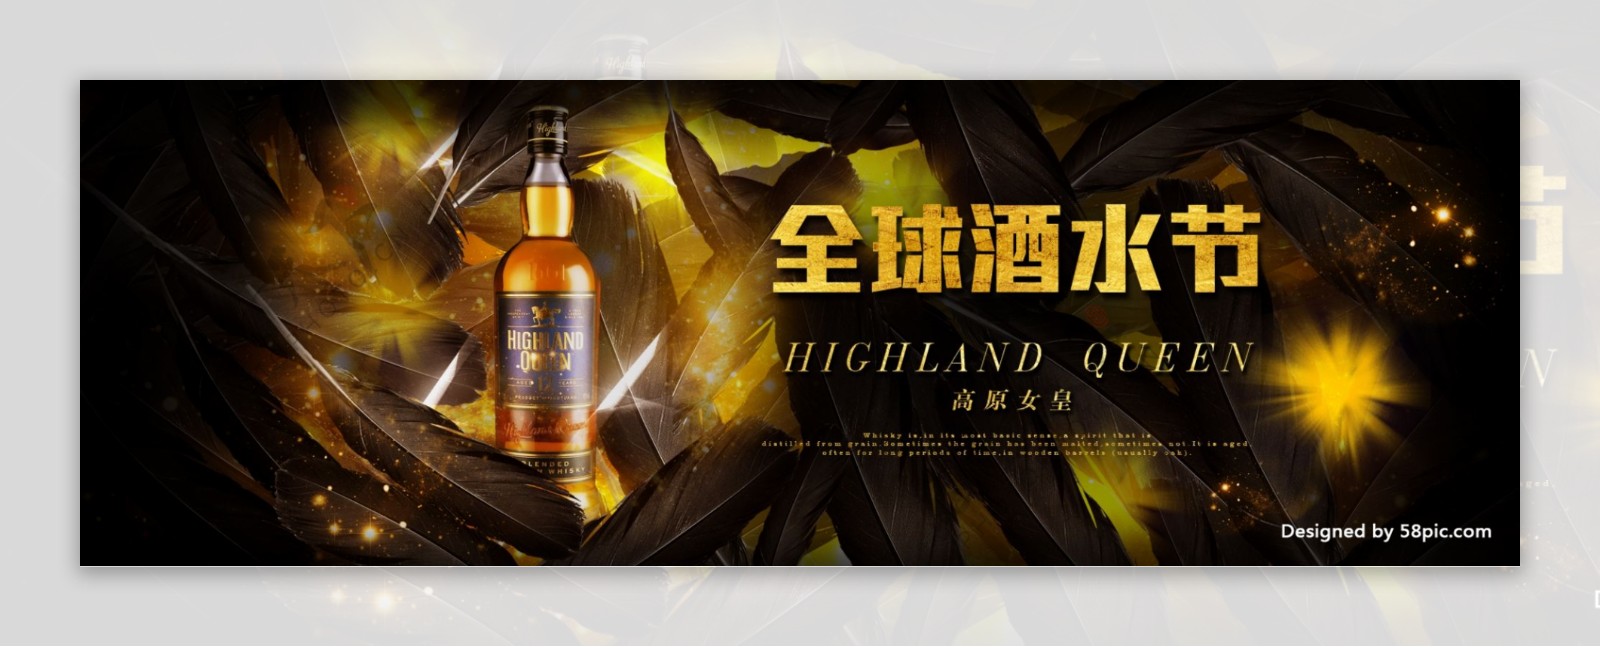 电商淘宝天猫全球酒水节香槟海报banner模板设计